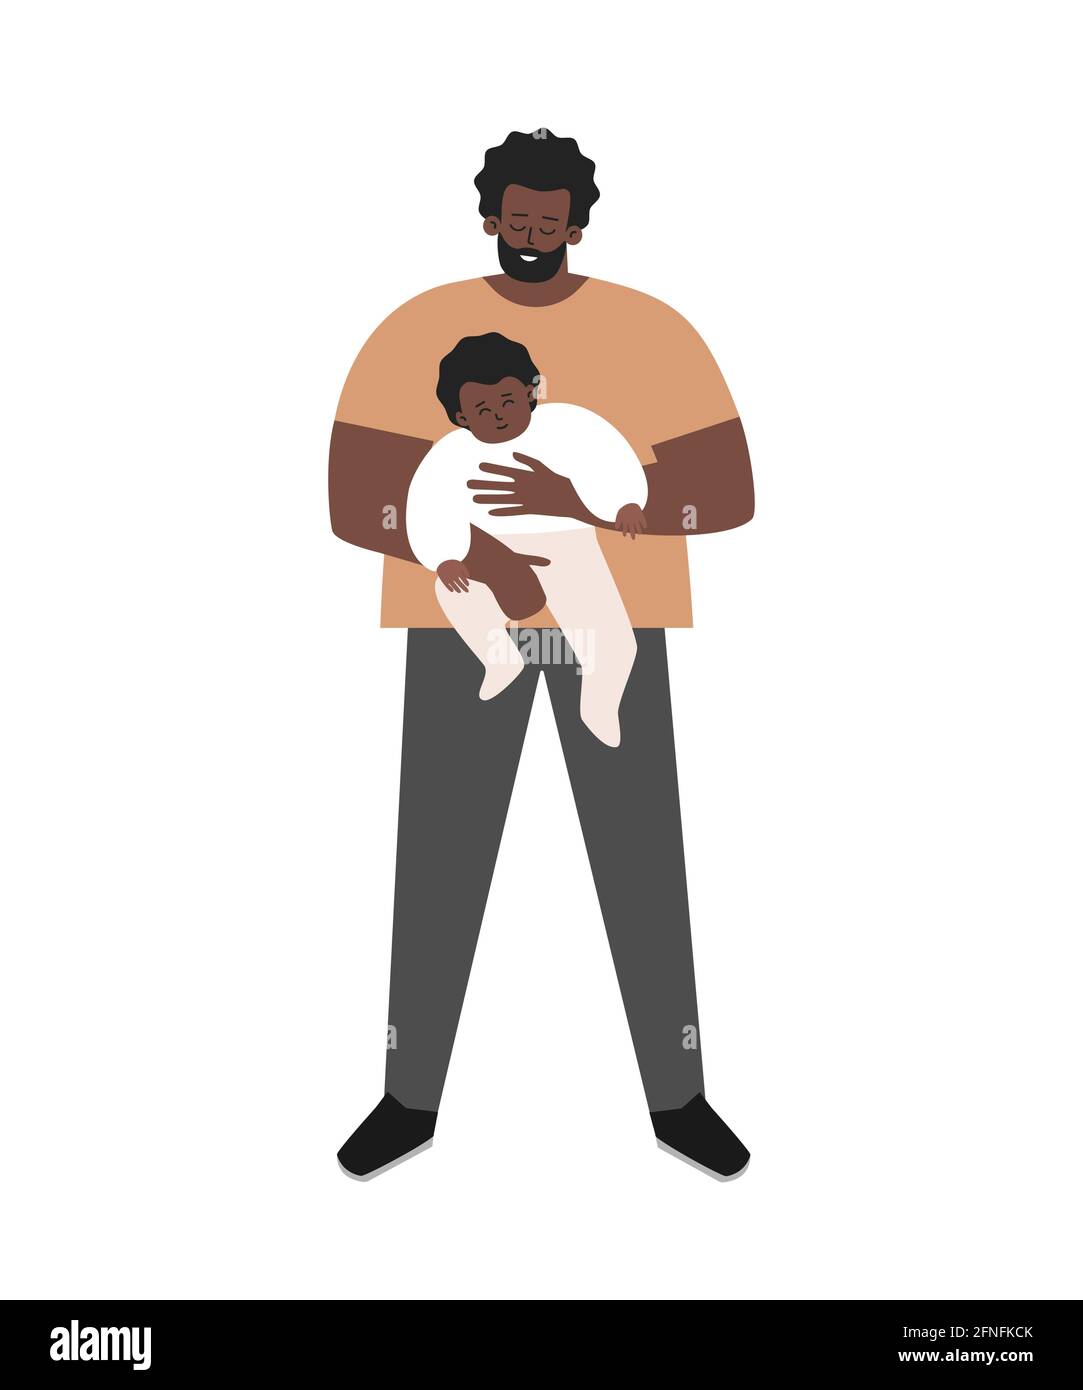 Vektor-isolierte flache Illustration. Afroamerikanischer Alleinerziehender lächelt und hält in seinen Armen ein niedliches Adoptivkind. Glücklicher Vater zeigt Eltern Stock Vektor